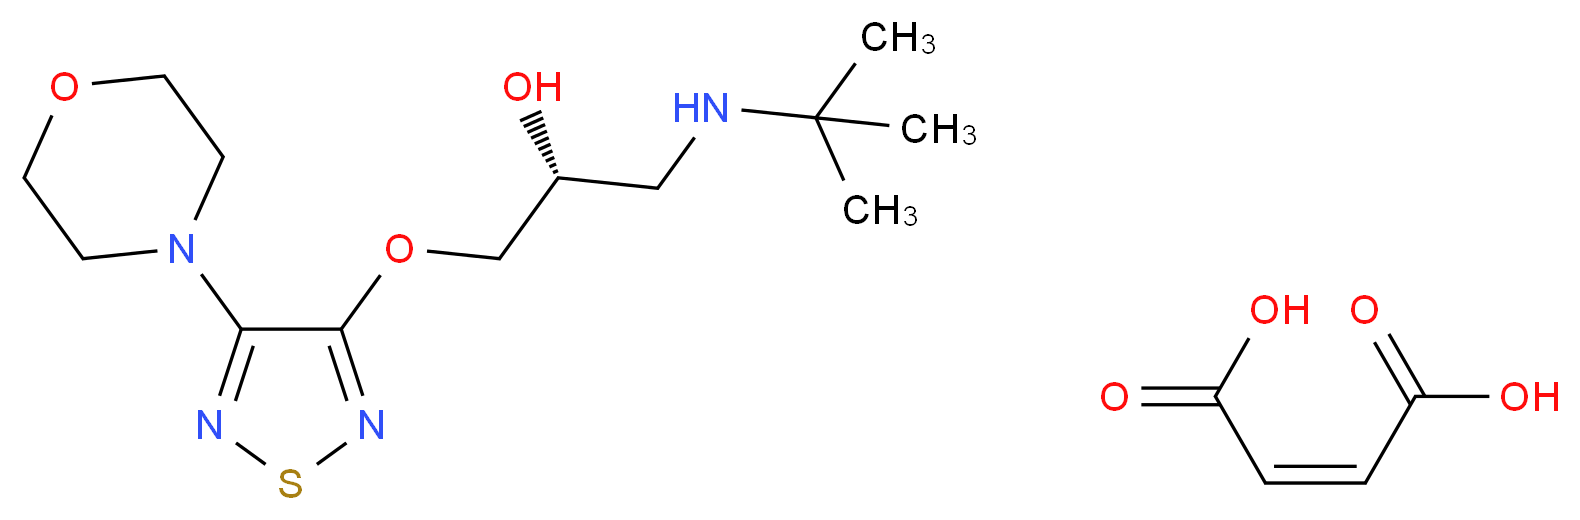 (R)-(+)-Timolol Maleate_Molecular_structure_CAS_26839-77-0)